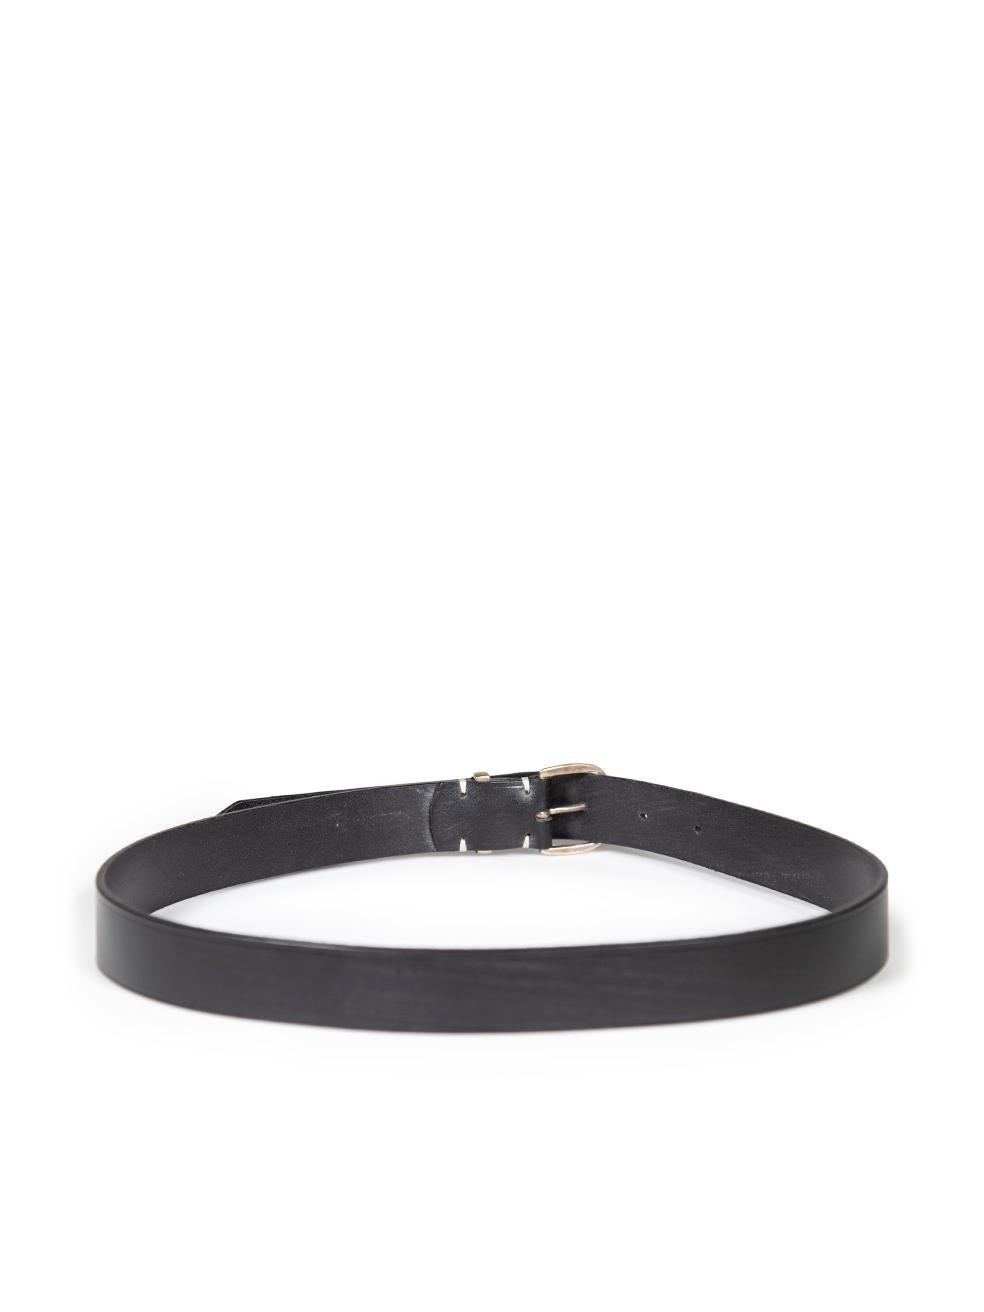 Women's Margaret Howell Black Leather Waist Belt For Sale